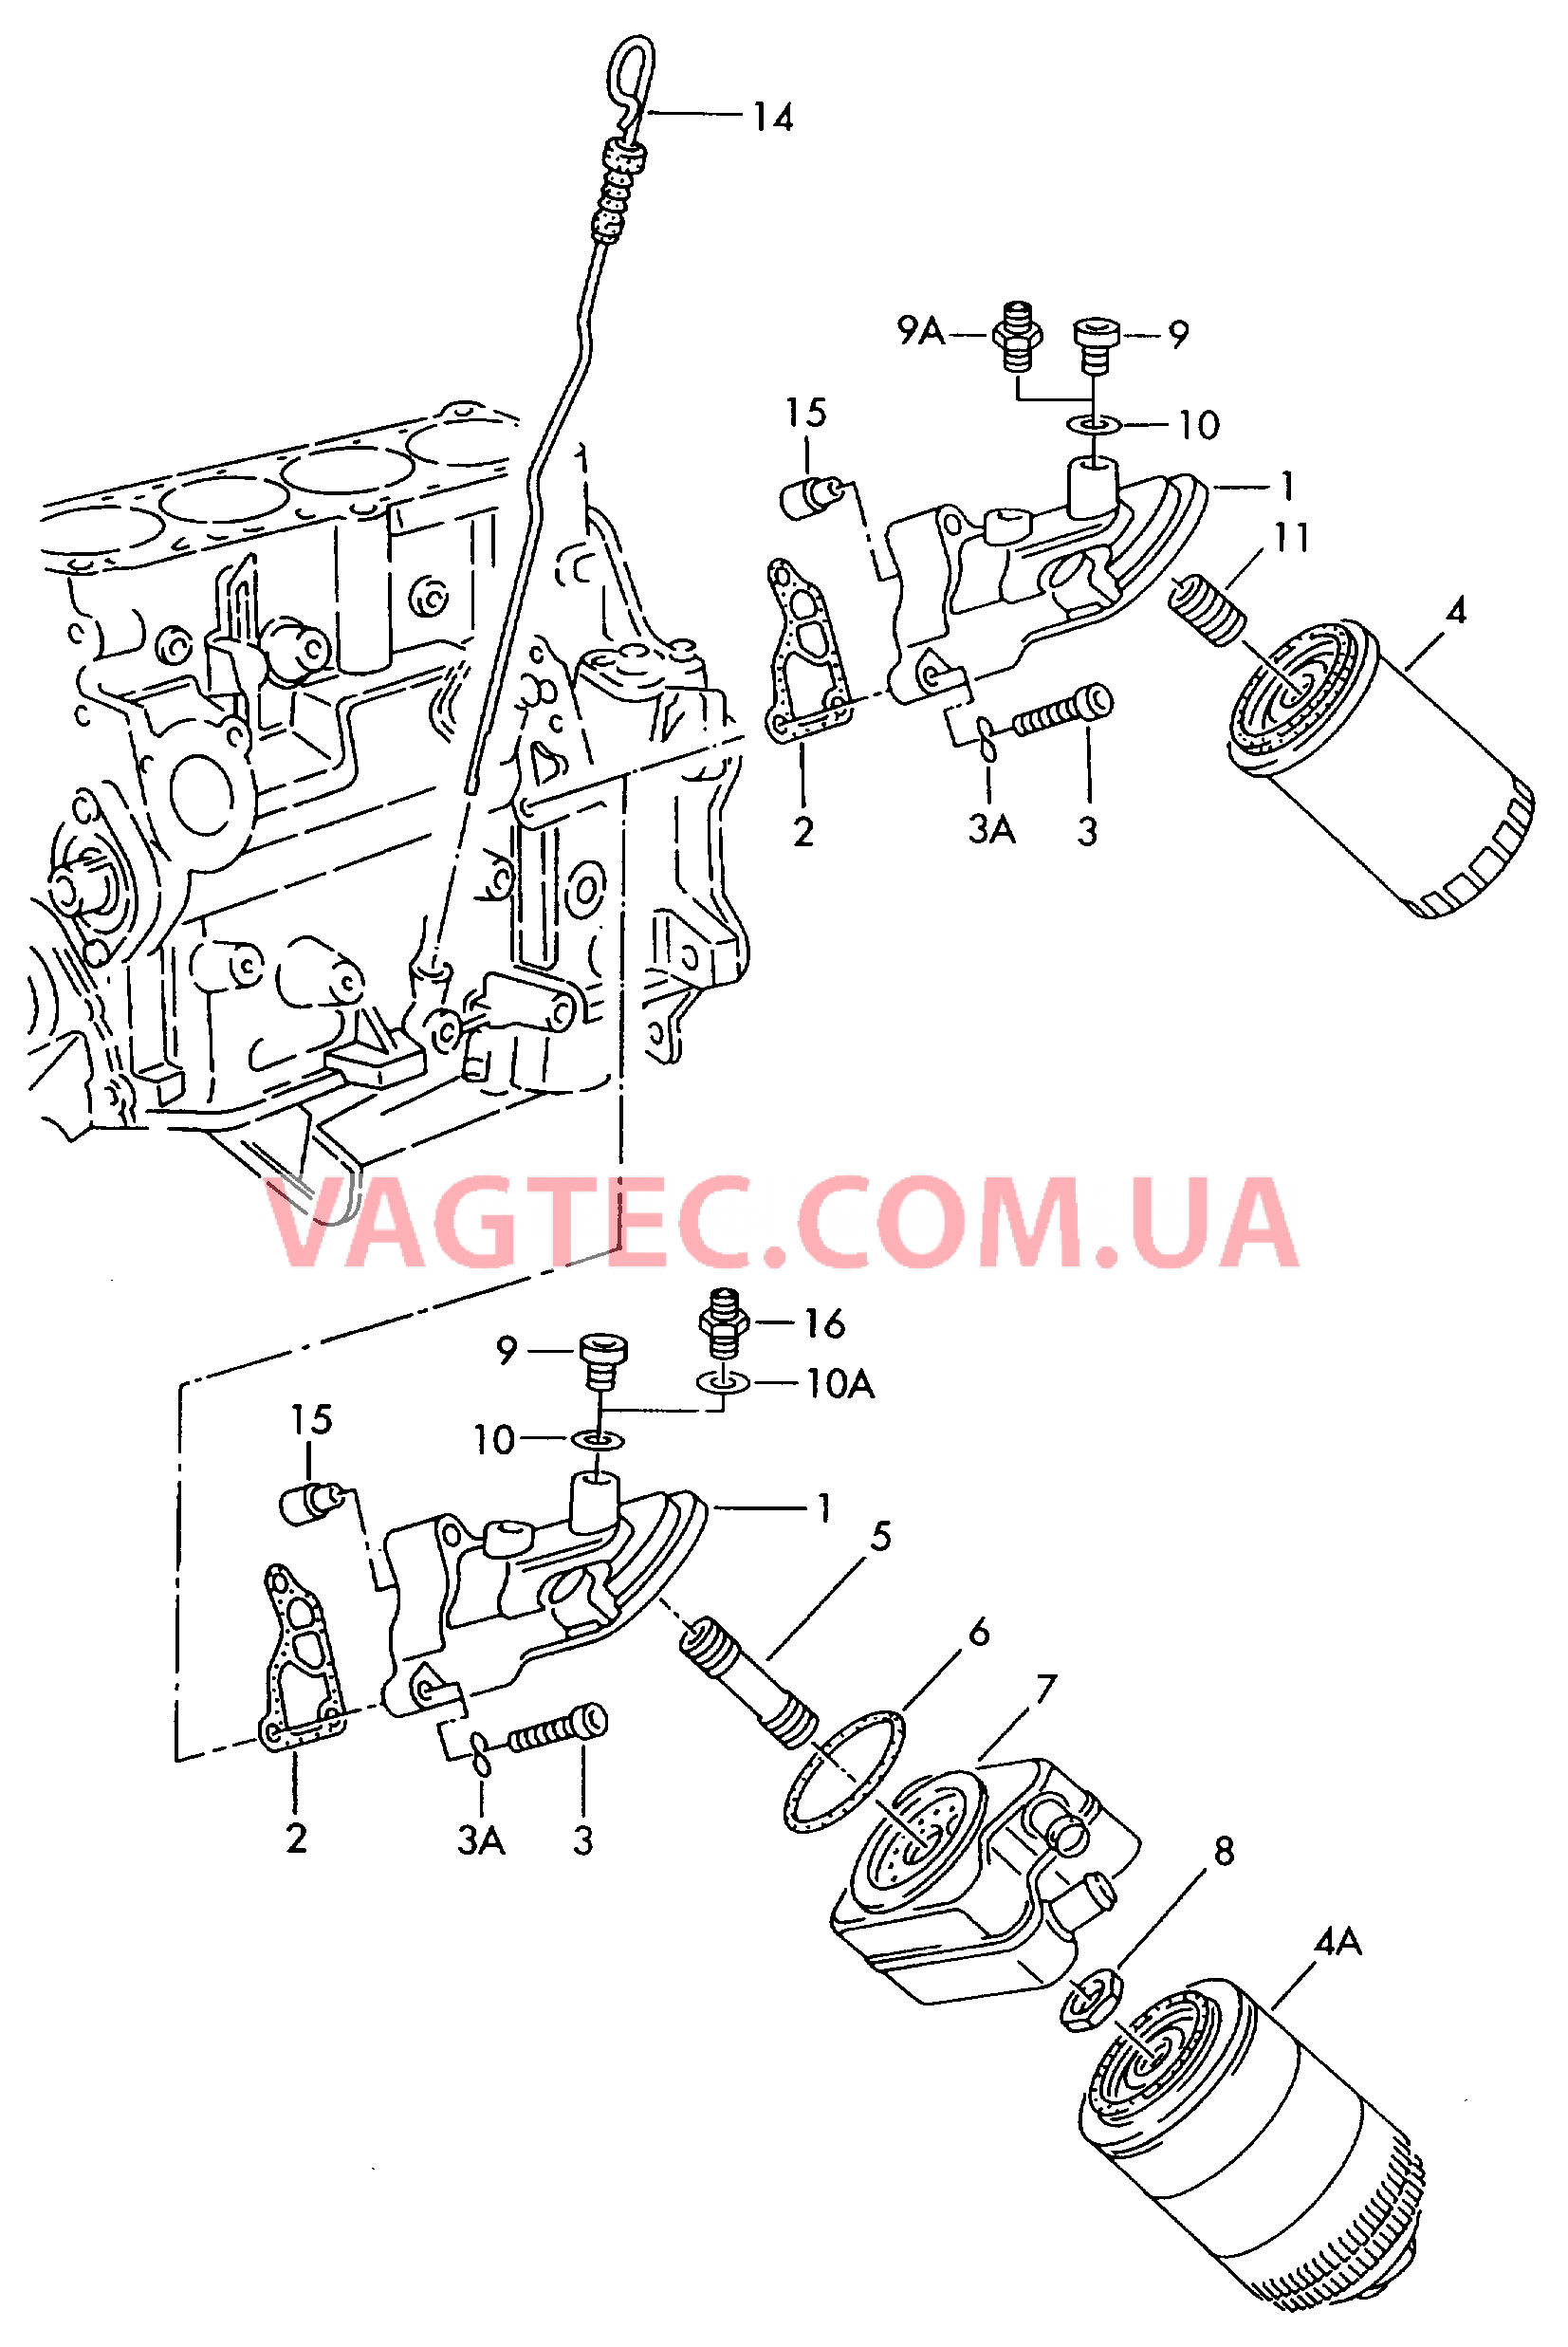 Фильтр, масляный Кронштейн масляного фильтра Маслоизмерительный щуп  для AUDI A4Q 2000